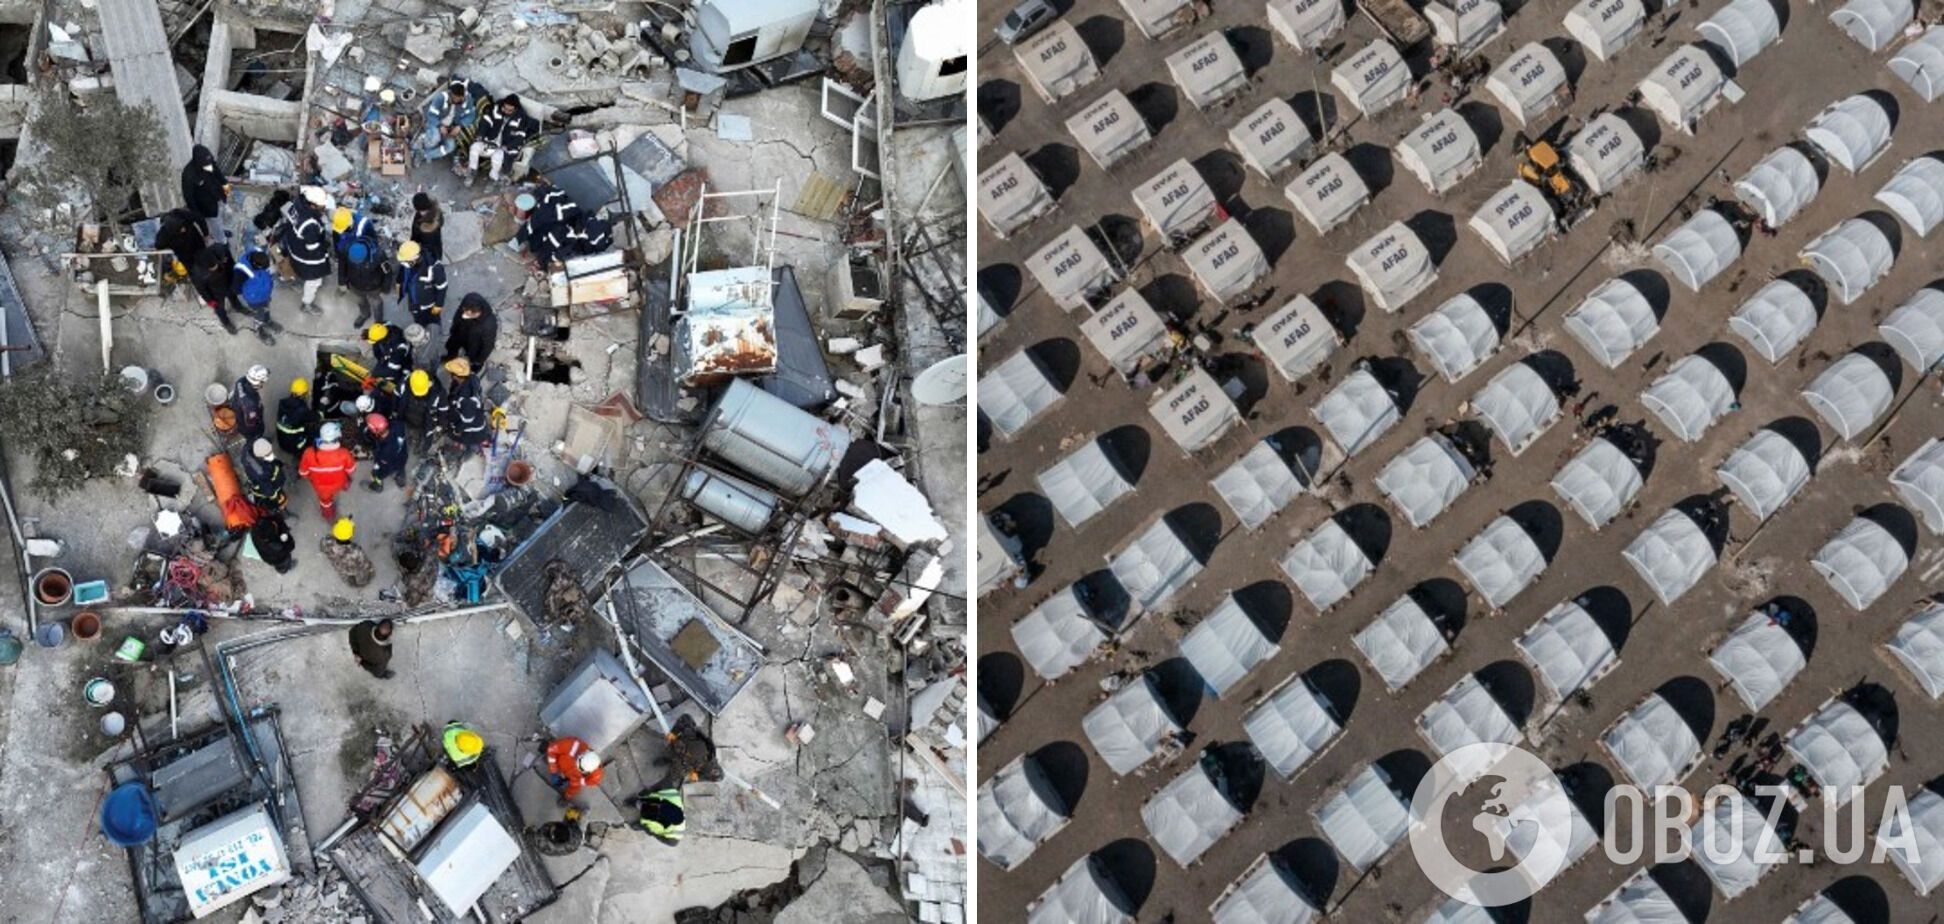 Туреччина зупинила більшу частину рятувальних робіт після землетрусу: шанси знайти живих практично нульові. Фото й відео